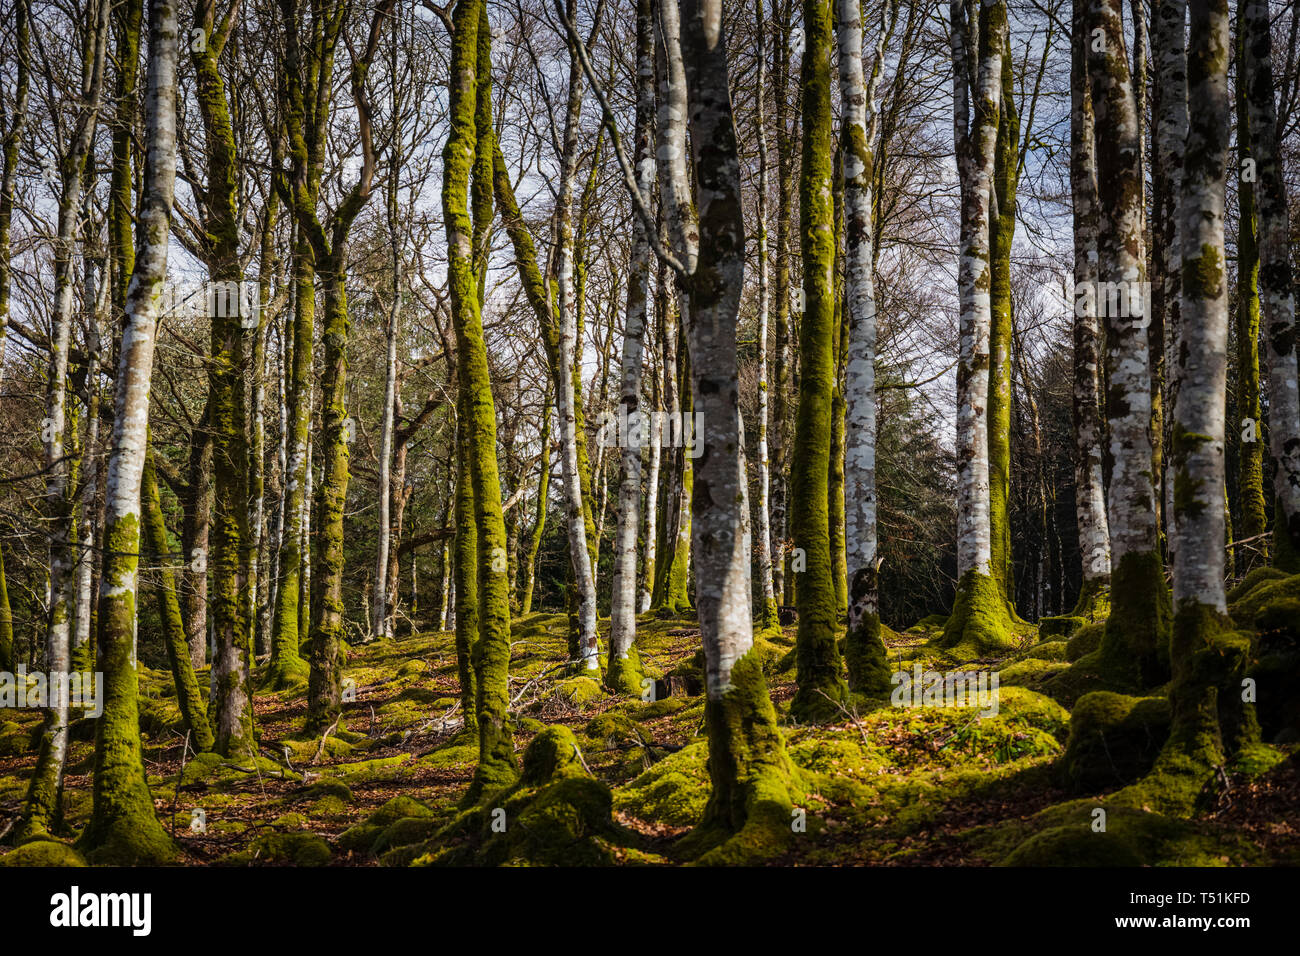 Birch woodland in Spring, Barcaldine, Oban, Scotland. Stock Photo